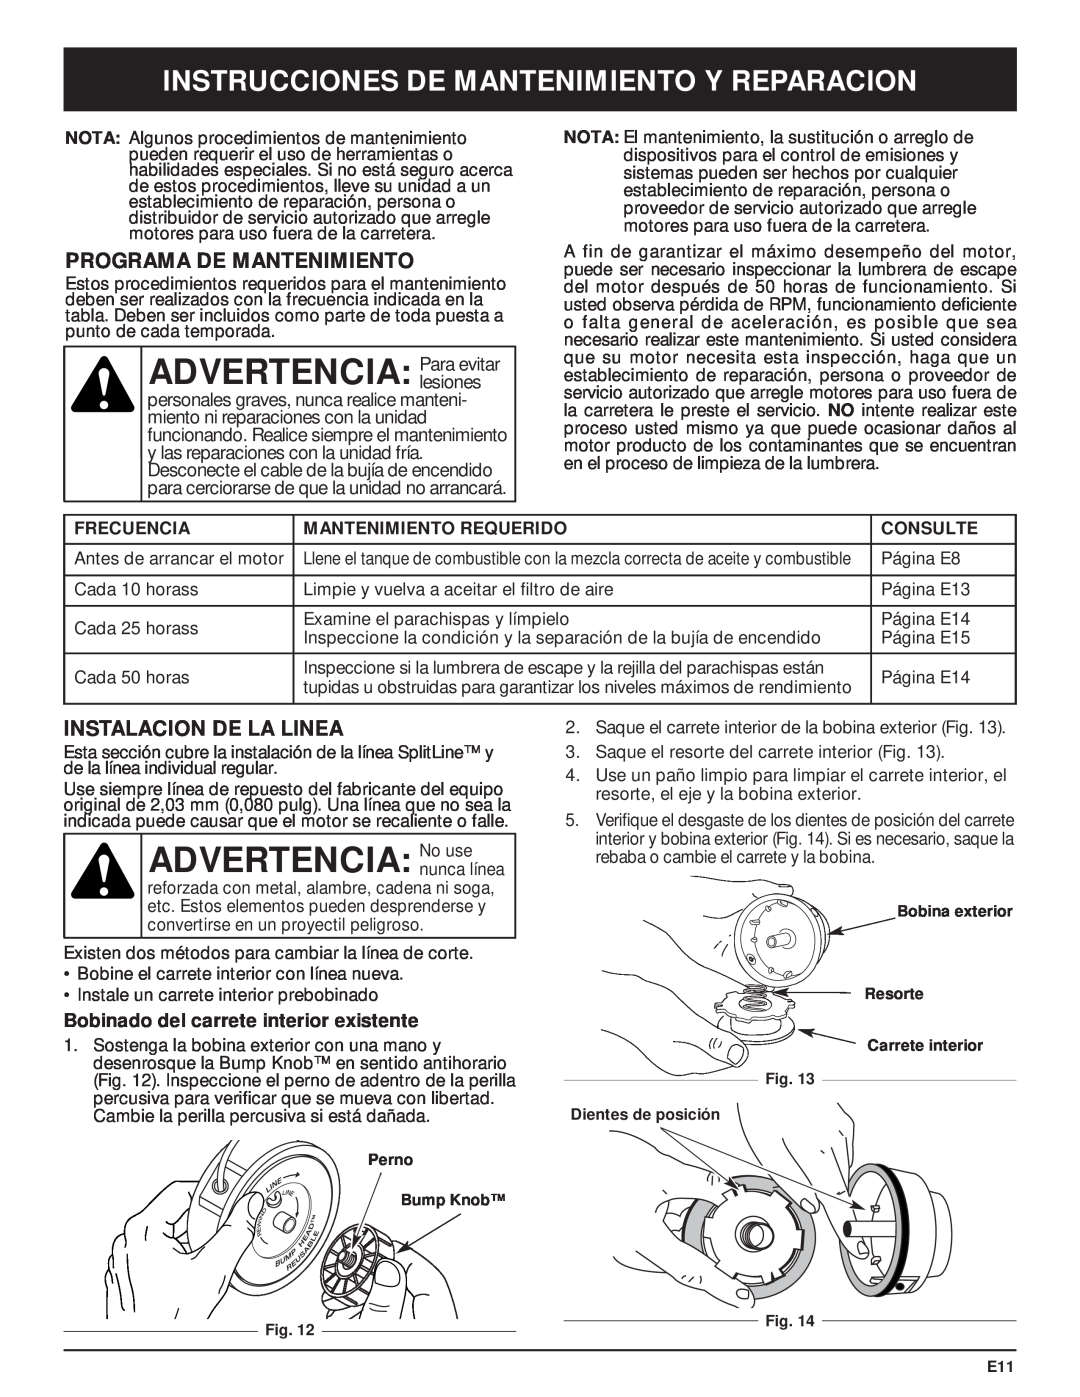 MTD Y28 ADVERTENCIA Para evitar, ADVERTENCIA No use, Instrucciones De Mantenimiento Y Reparacion, Instalacion De La Linea 